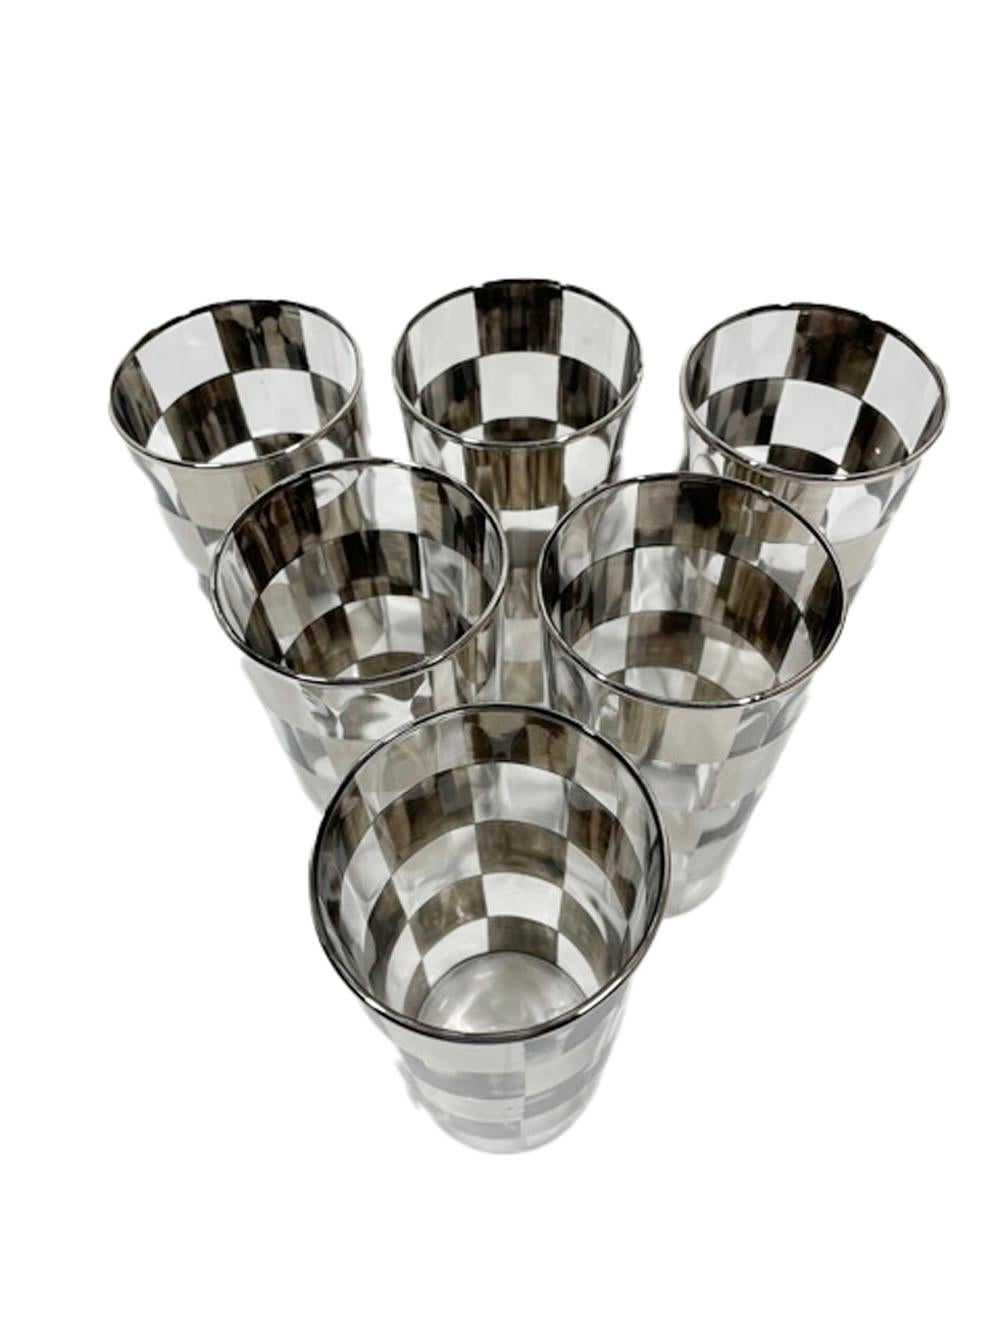 Cocktail-Set im Art-déco-Stil mit Silberkaro-Muster auf geripptem optischem Glas (Art déco)